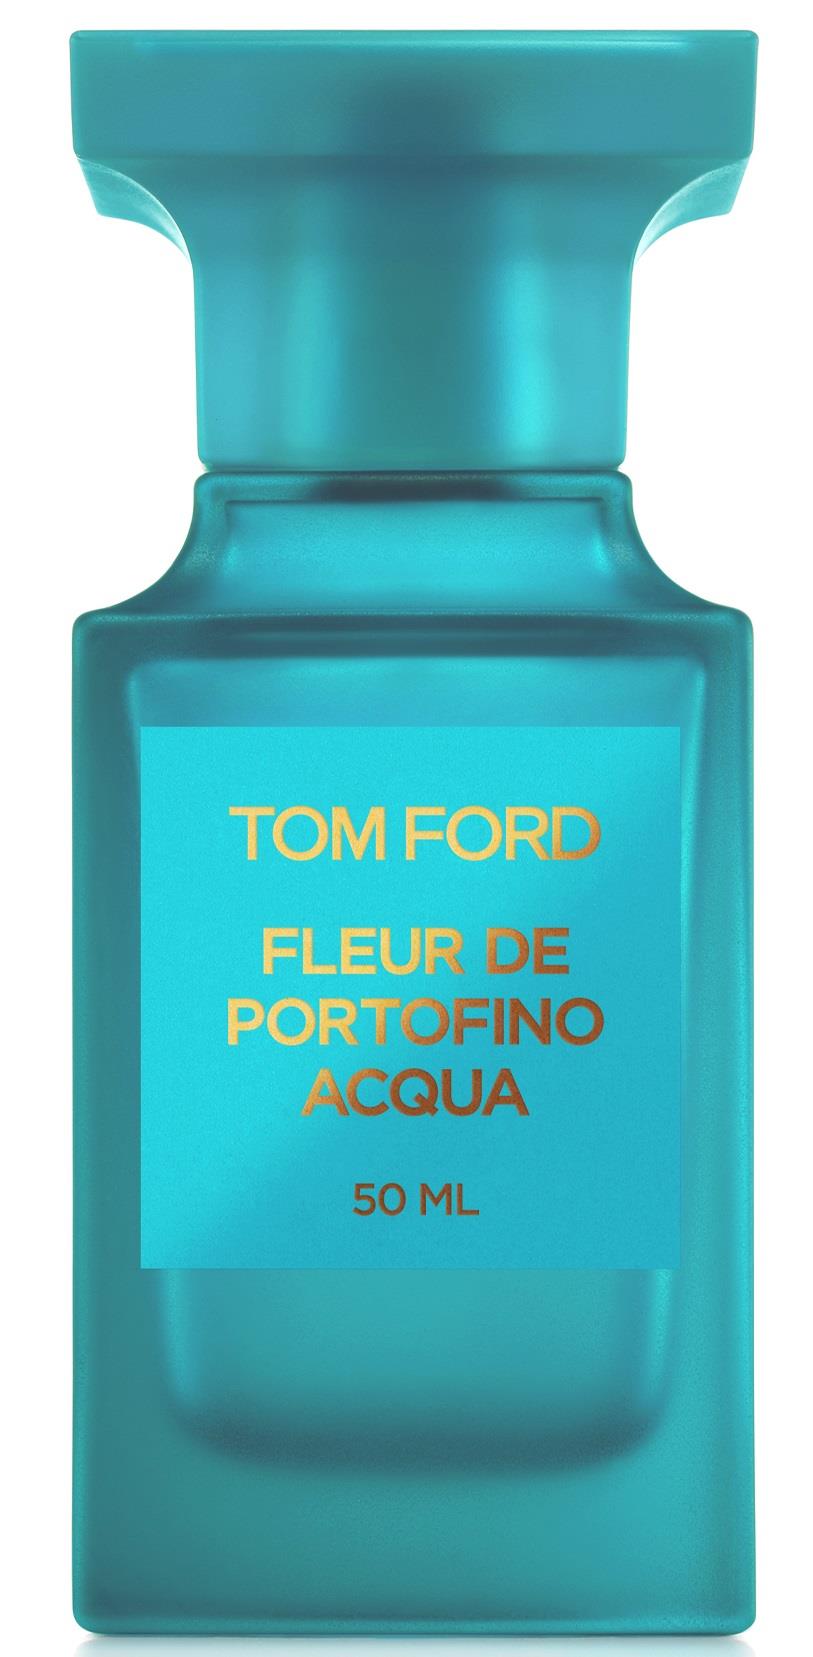 Tom Ford Fleur de Portofino Acqua 50 ml 